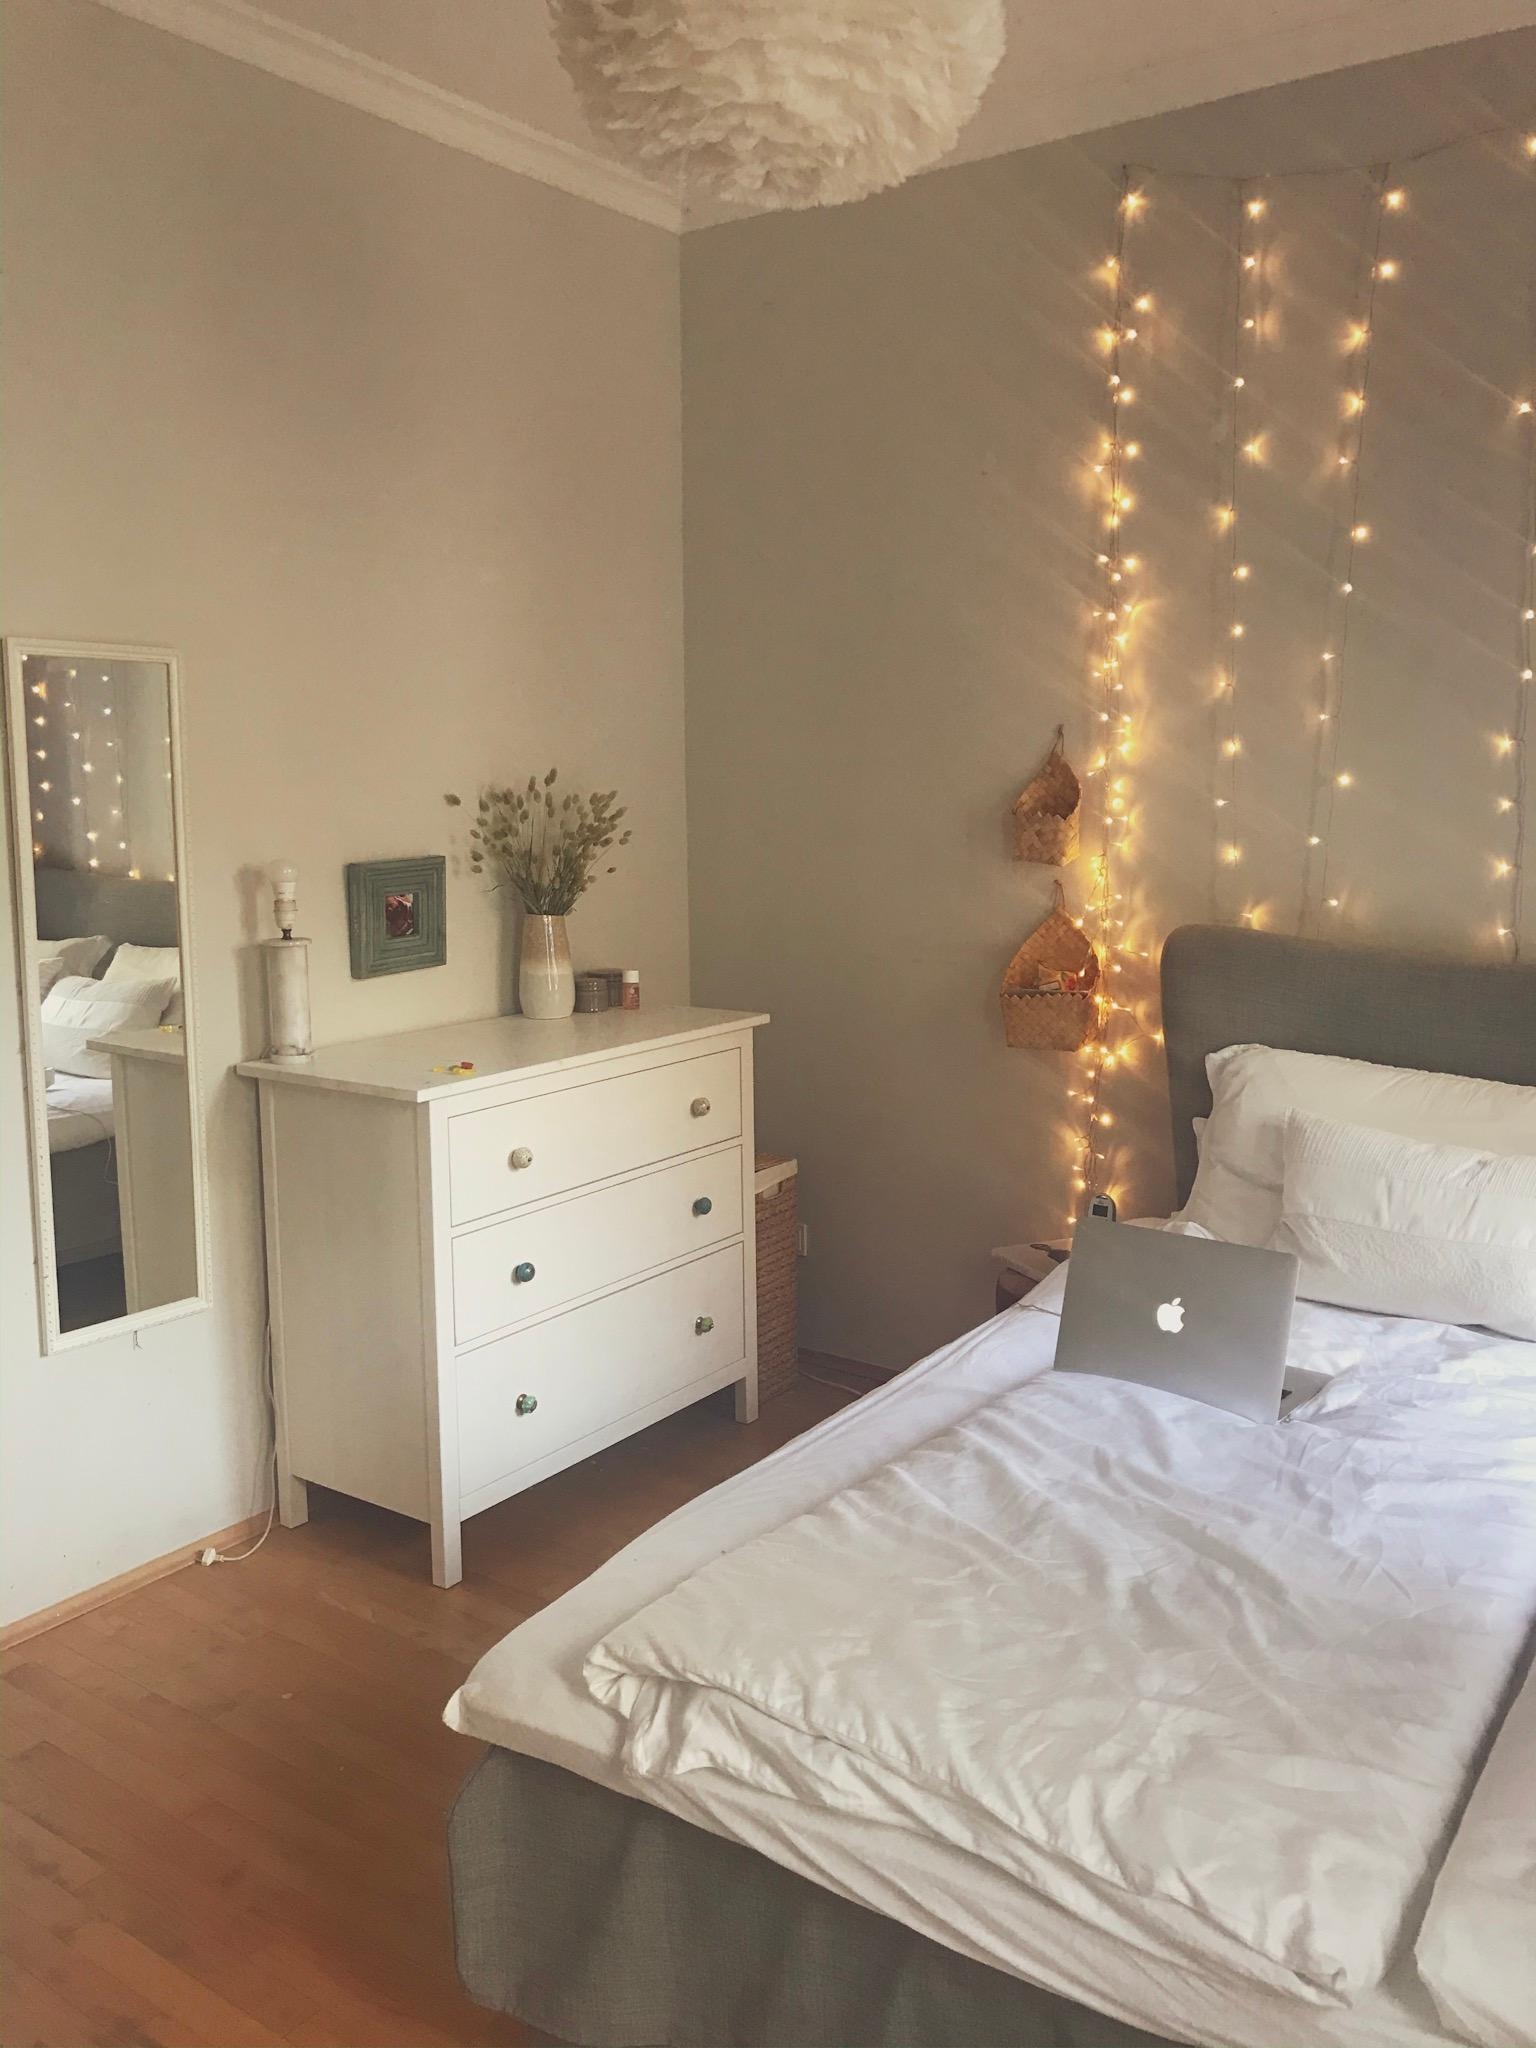 Der Lichtervorhang passt perfekt zum Herbst! 🍂
#schlafzimmer #bedroom #couchstyle